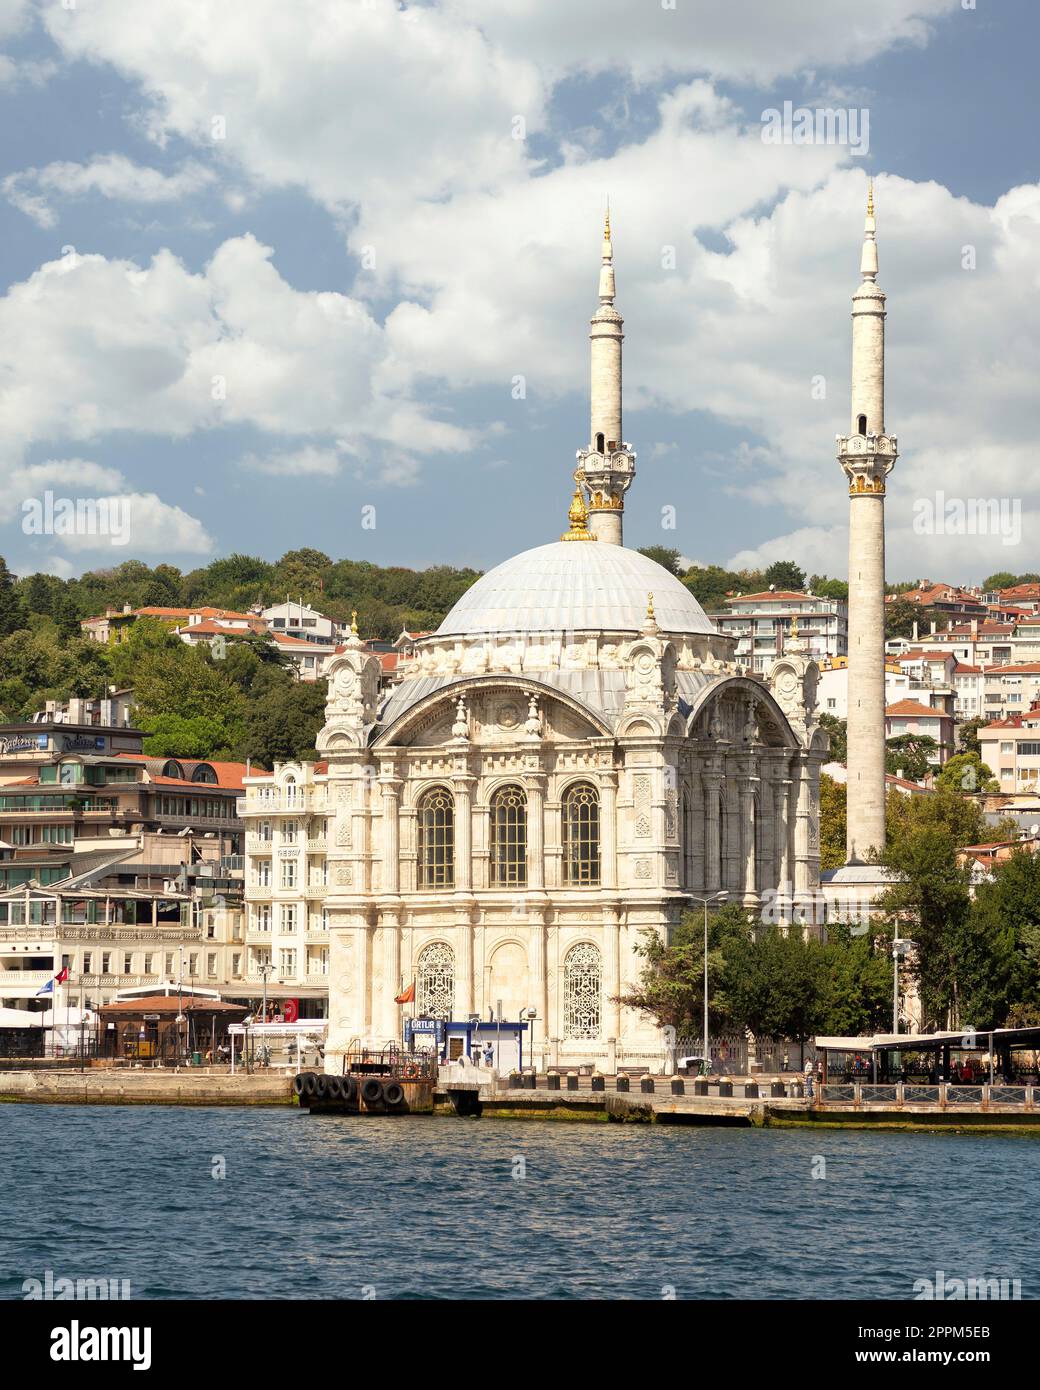 Vista dallo stretto del Bosforo con vista sulla Moschea di Ortakoy, o Ortakoy Camii, adatta alla piazza del molo di Ortakoy, Istanbul, Turchia Foto Stock